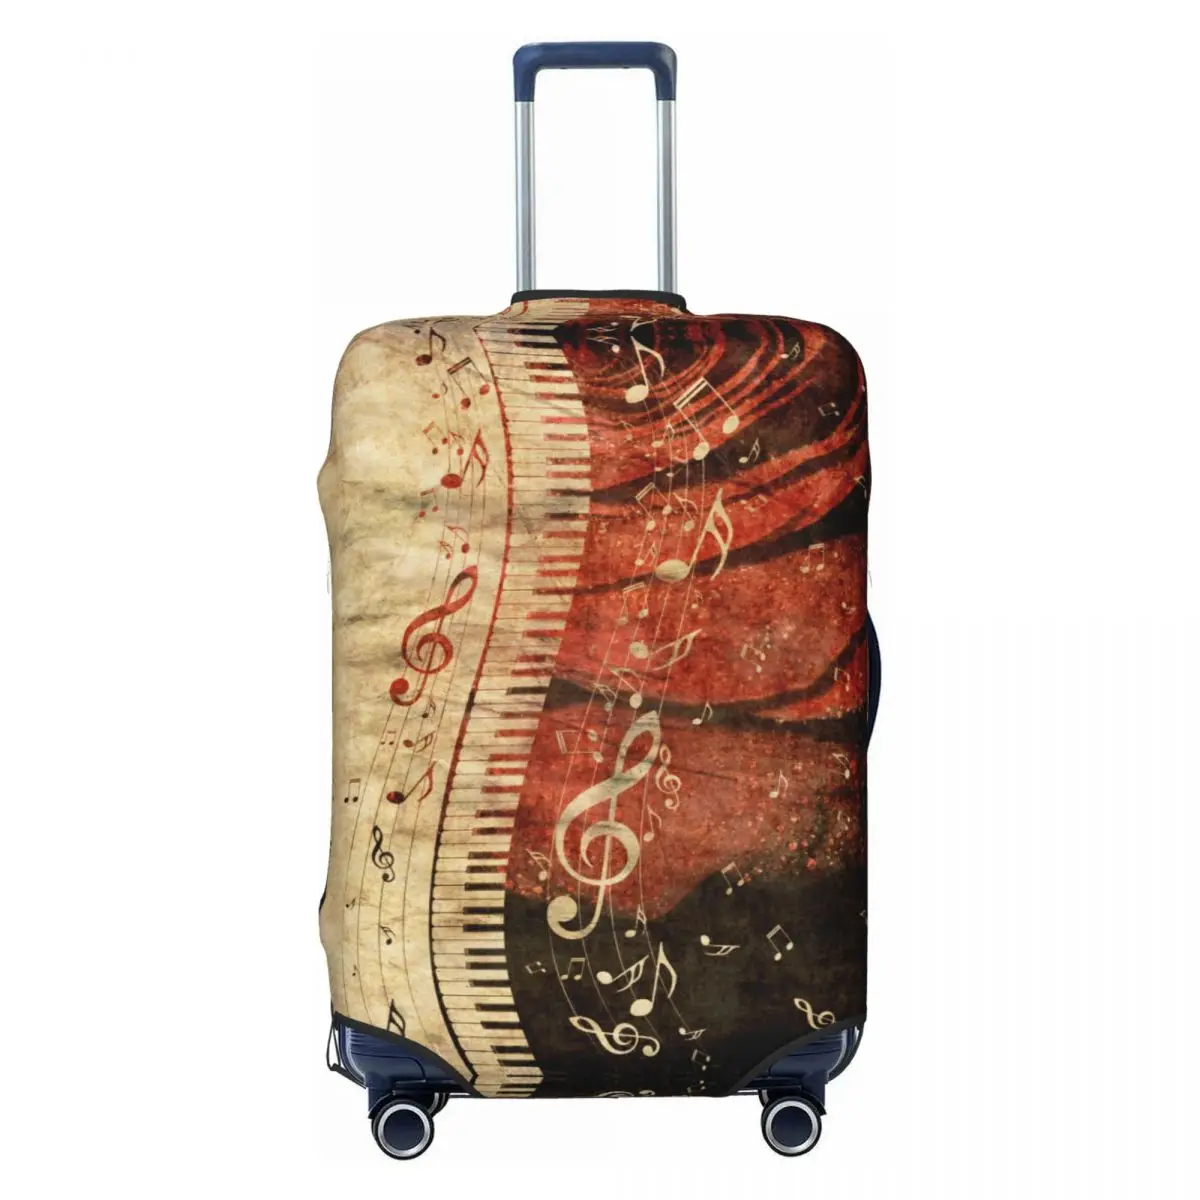 

Чехол для чемодана с музыкальными нотами на клавишах пианино, Эластичный Защитный чехол для чемодана для путешествий диагональю 18-32 дюйма